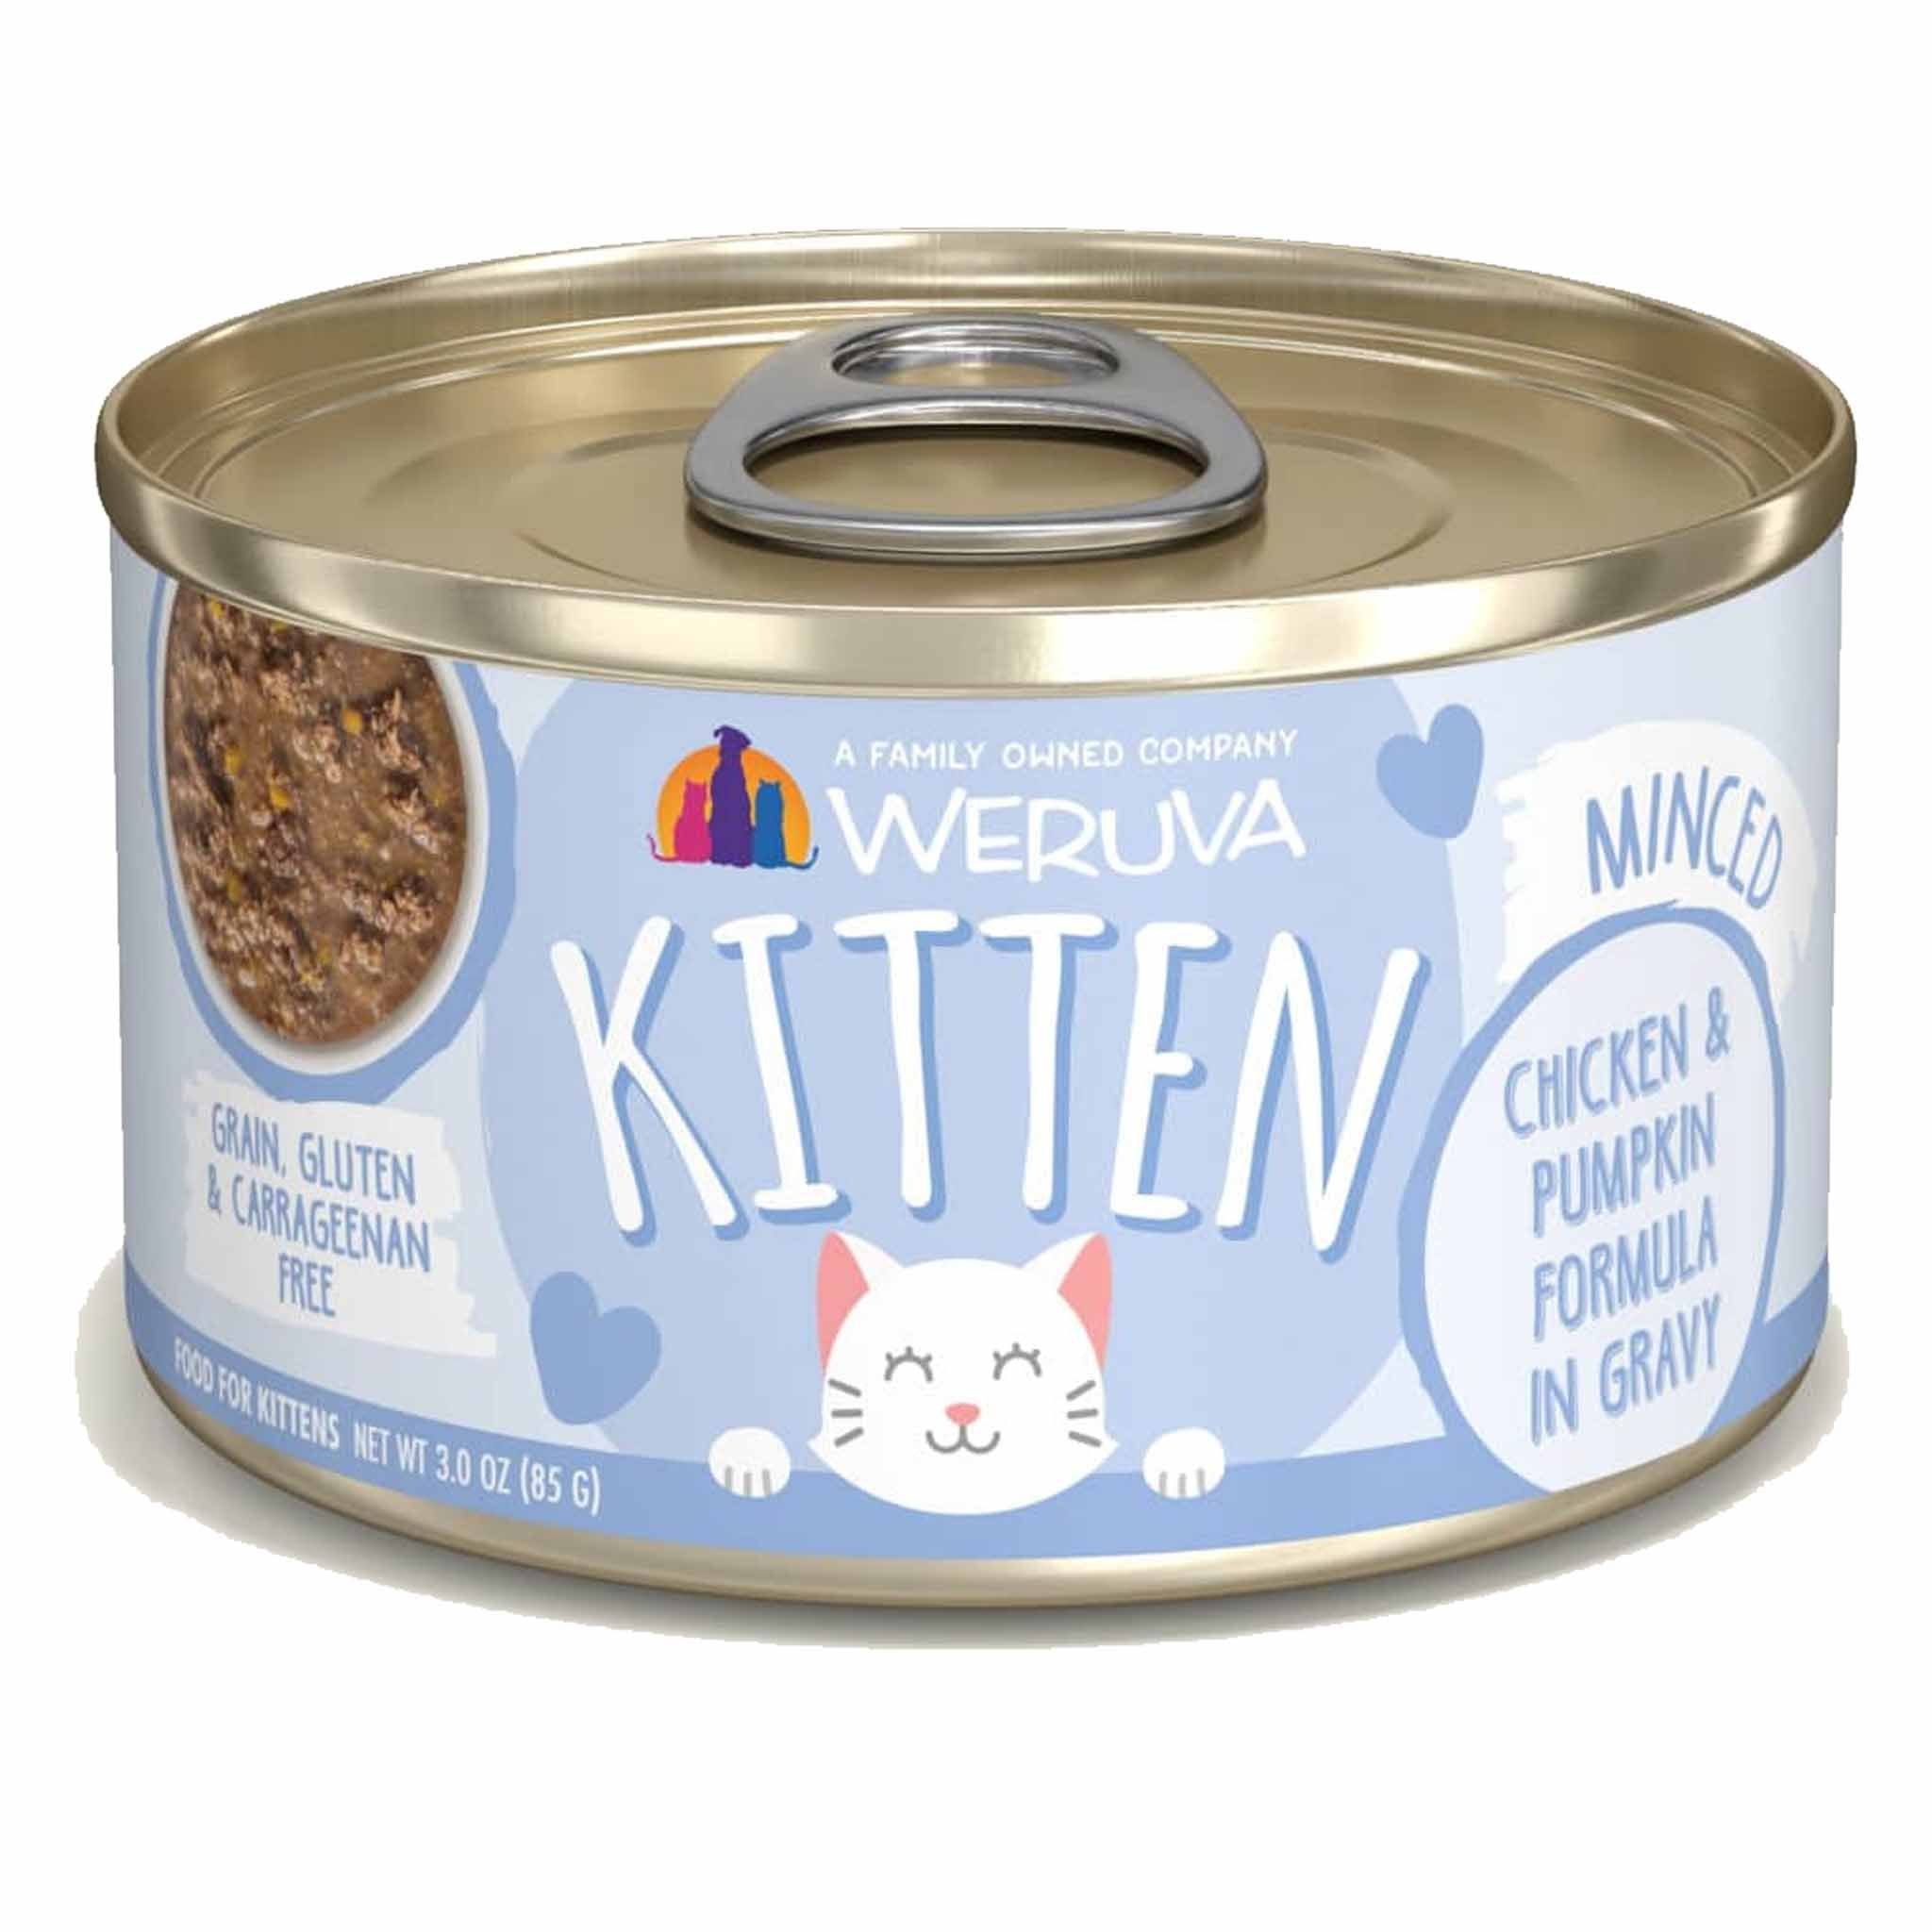 Weruva Kitten Canned Cat Food 3oz Chicken & Pumpkin Formula in Gravy